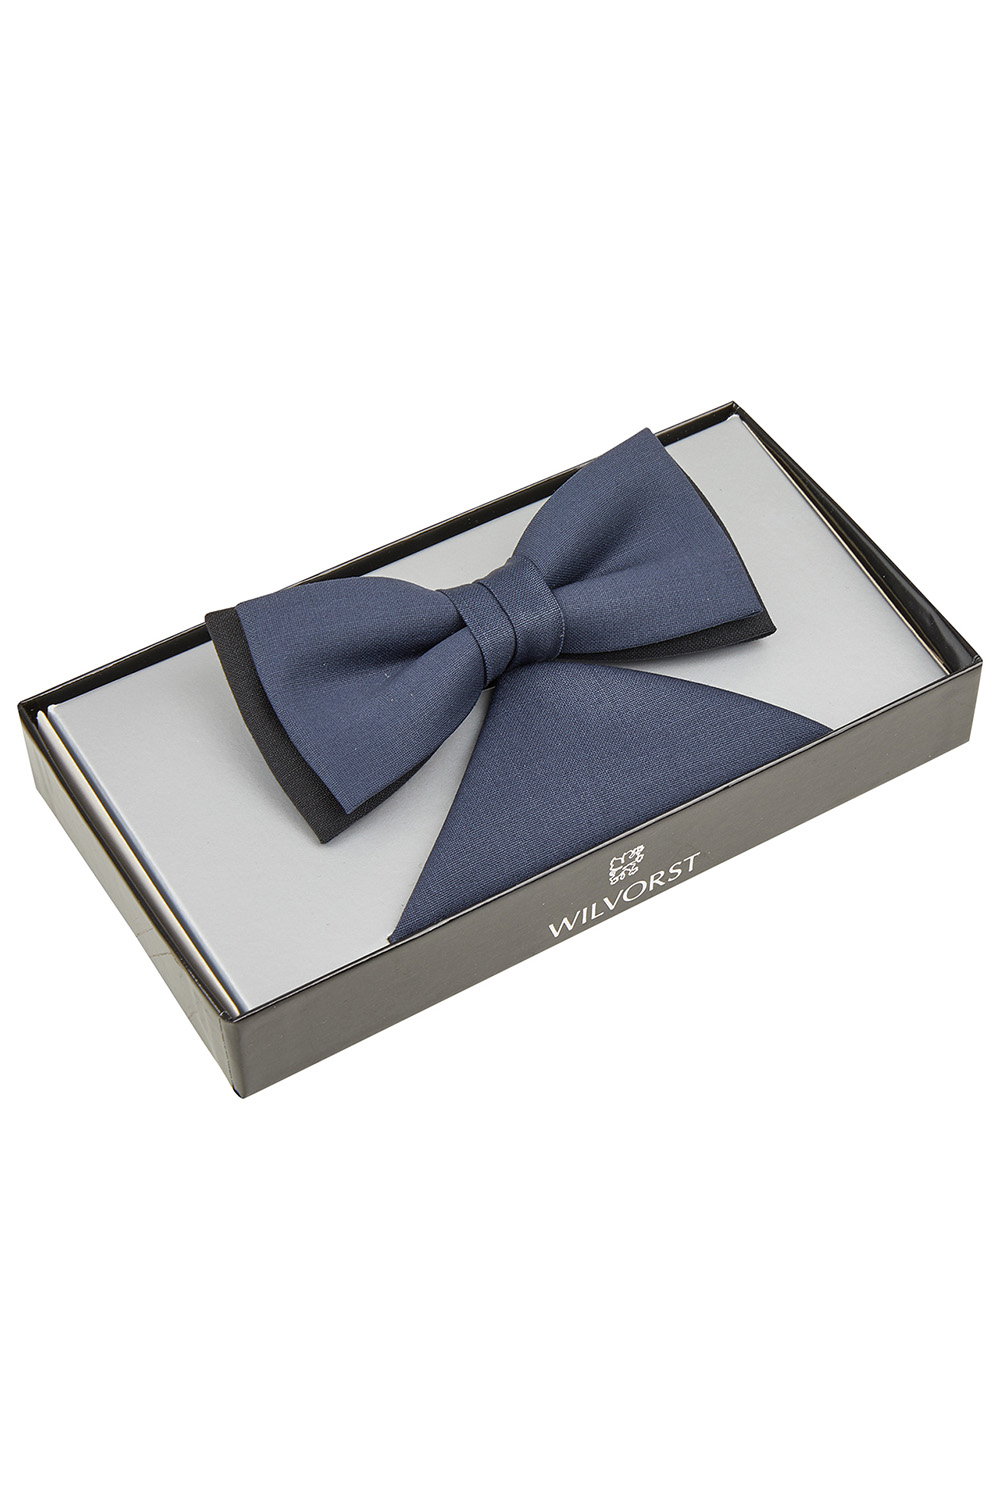 WILVORST kék csokornyakkendő és díszzsebkendő díszdobozban 441200-35 Modell 0429